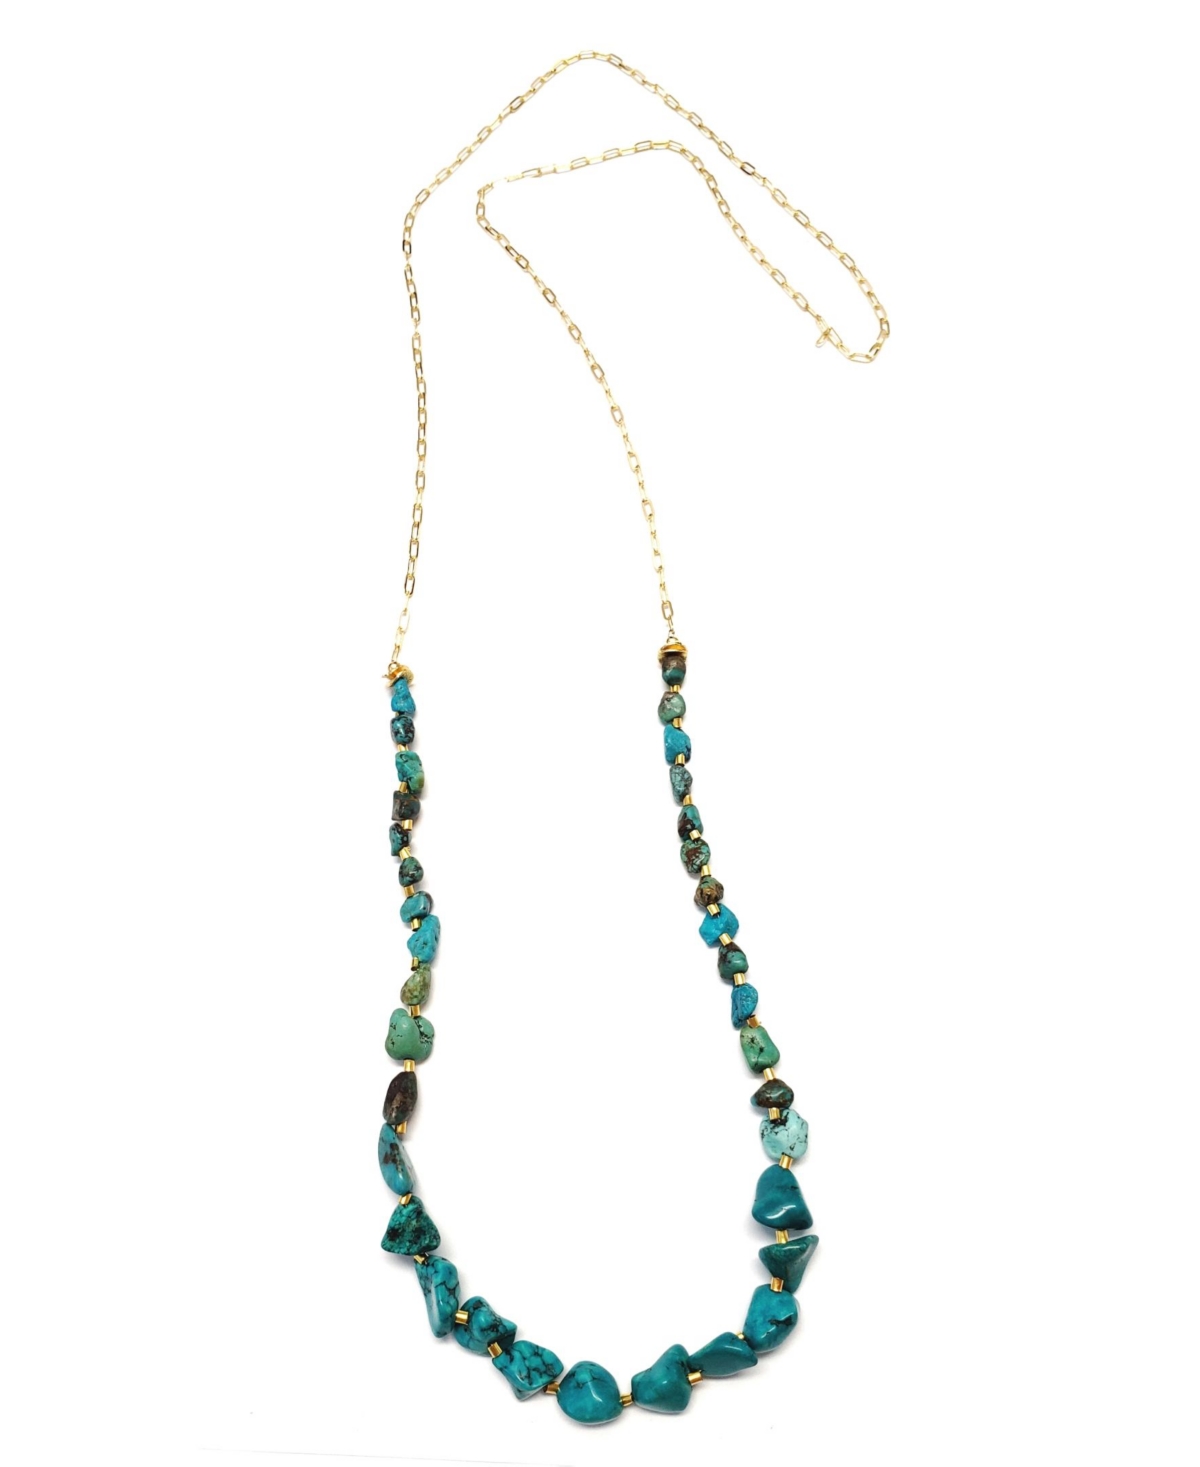 Jala Necklace - Turquoise